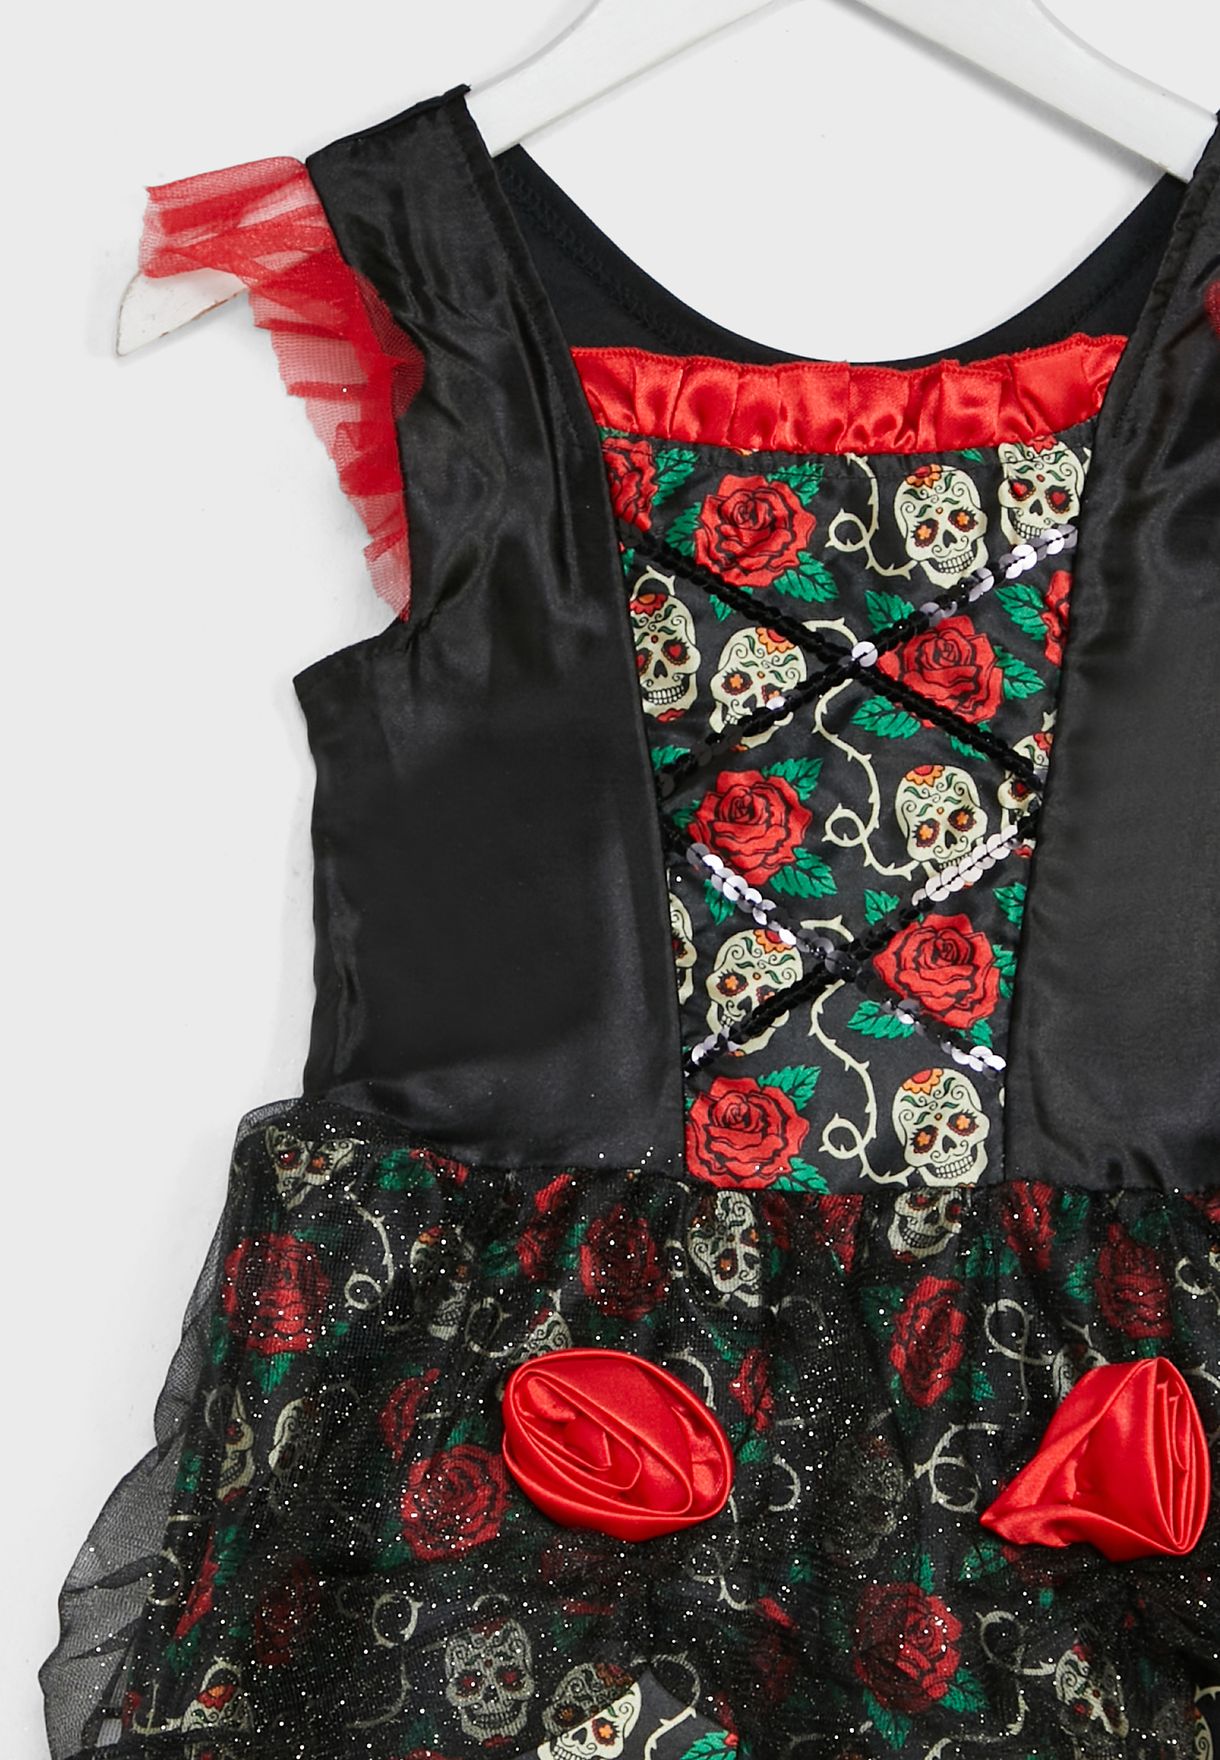 زيّ تنكري بتصميم فستان يوم الموتى مع وردة حمراء